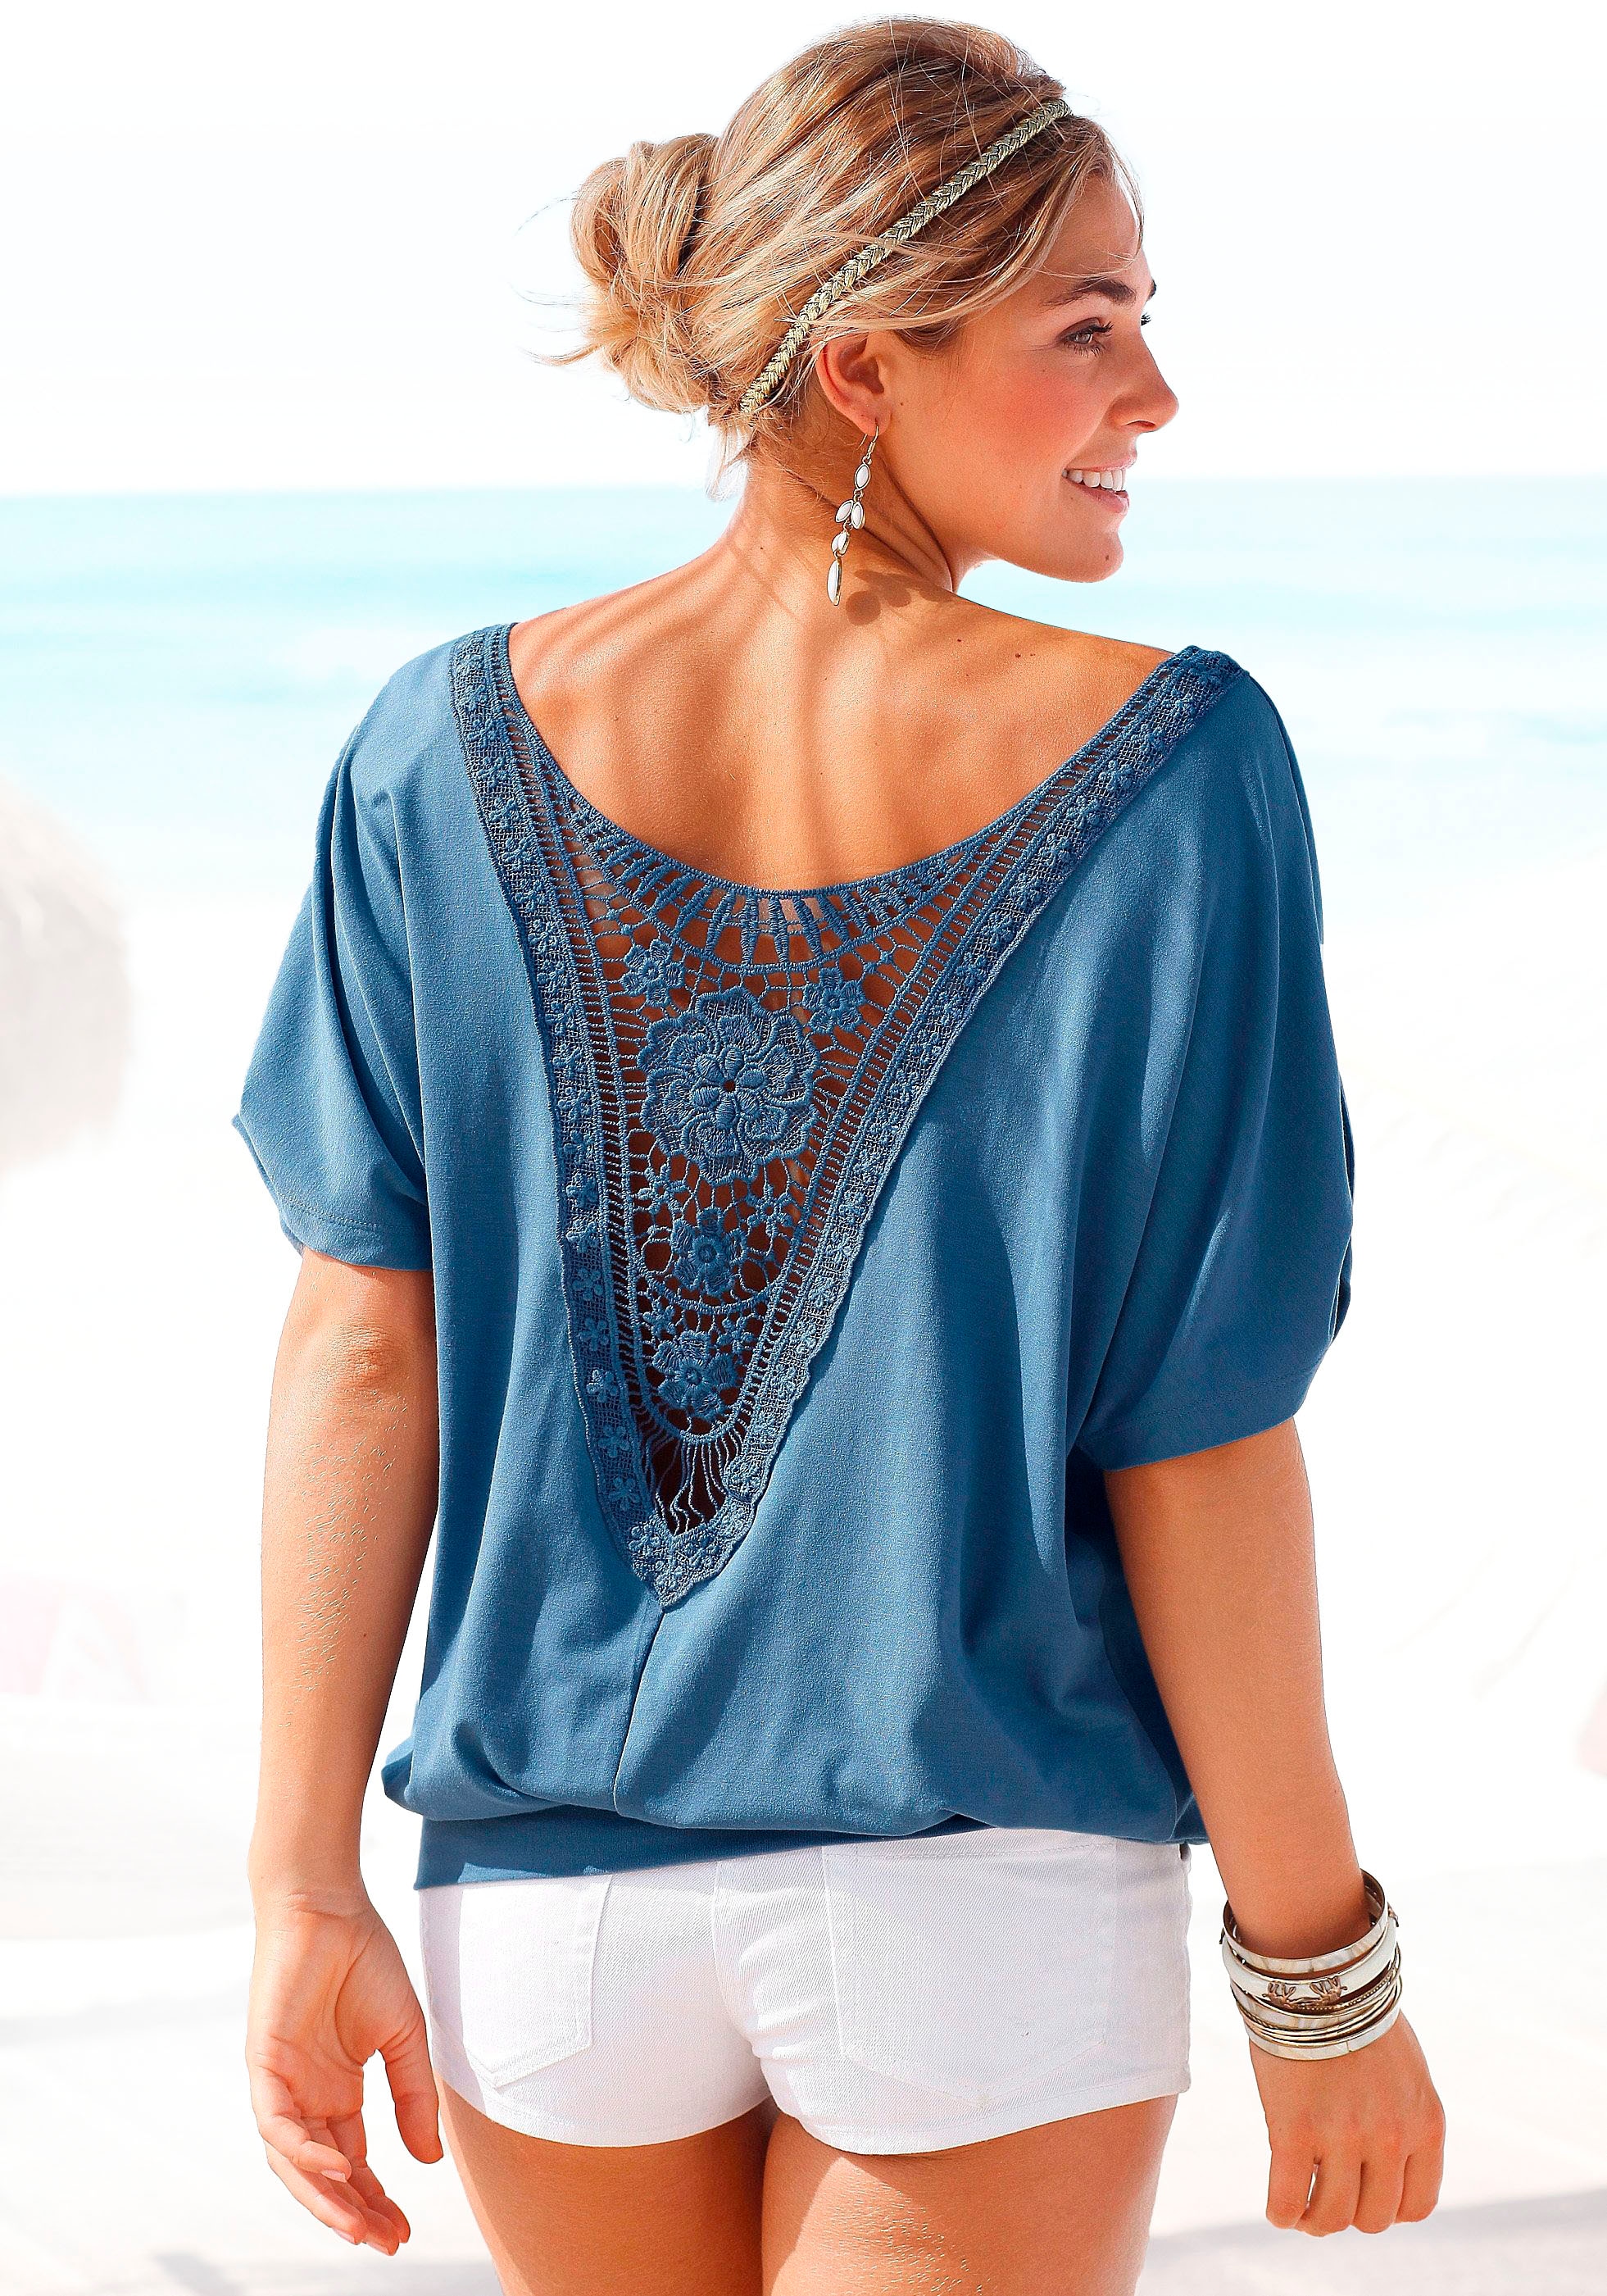 günstige online kaufen Strandshirts Mode -